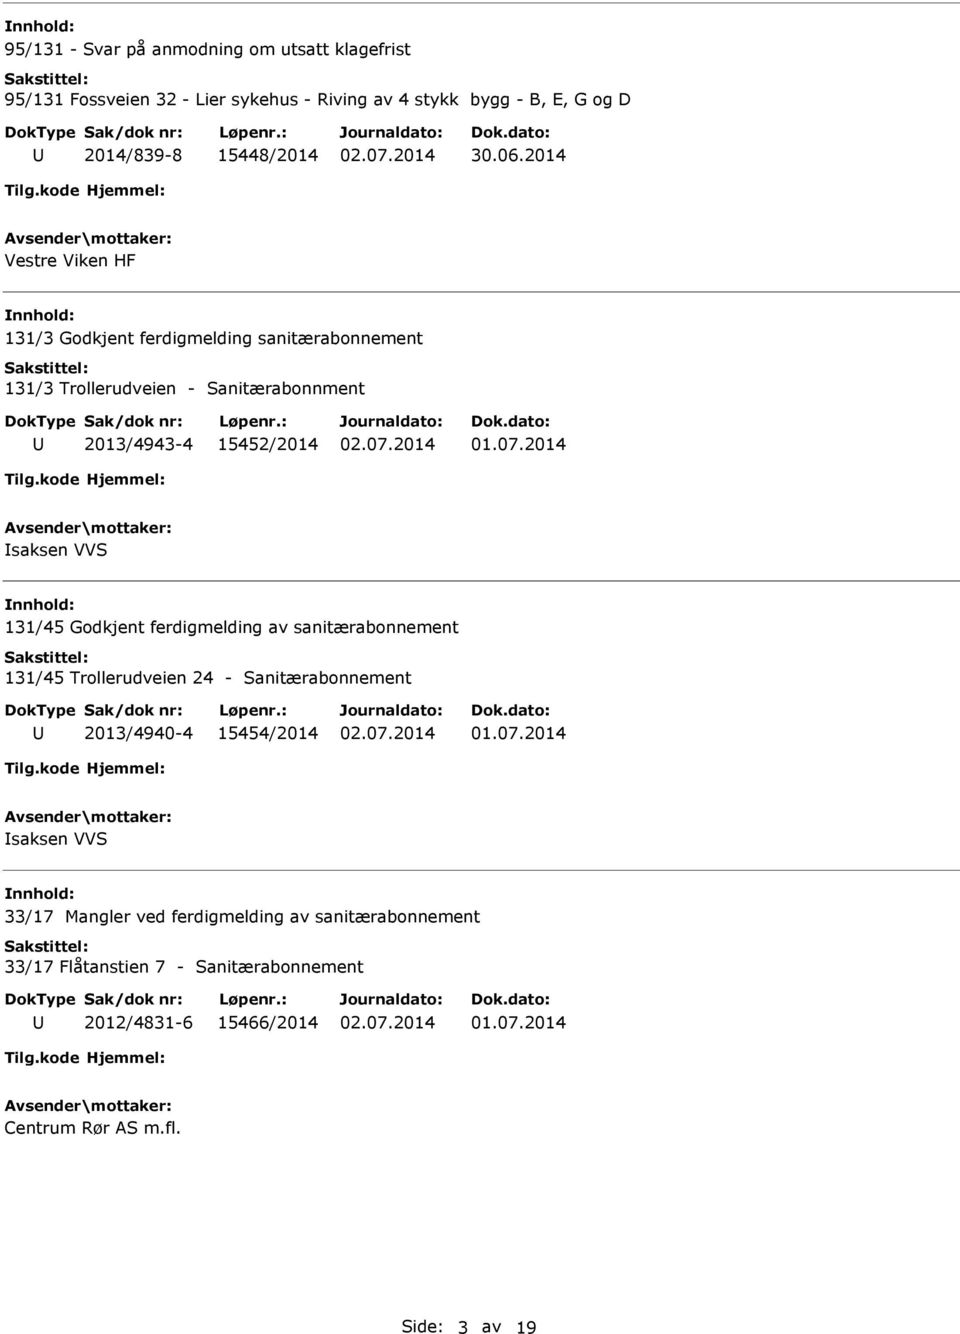 2014 Vestre Viken HF 131/3 Godkjent ferdigmelding sanitærabonnement 131/3 Trollerudveien - Sanitærabonnment 2013/4943-4 15452/2014 saksen VVS